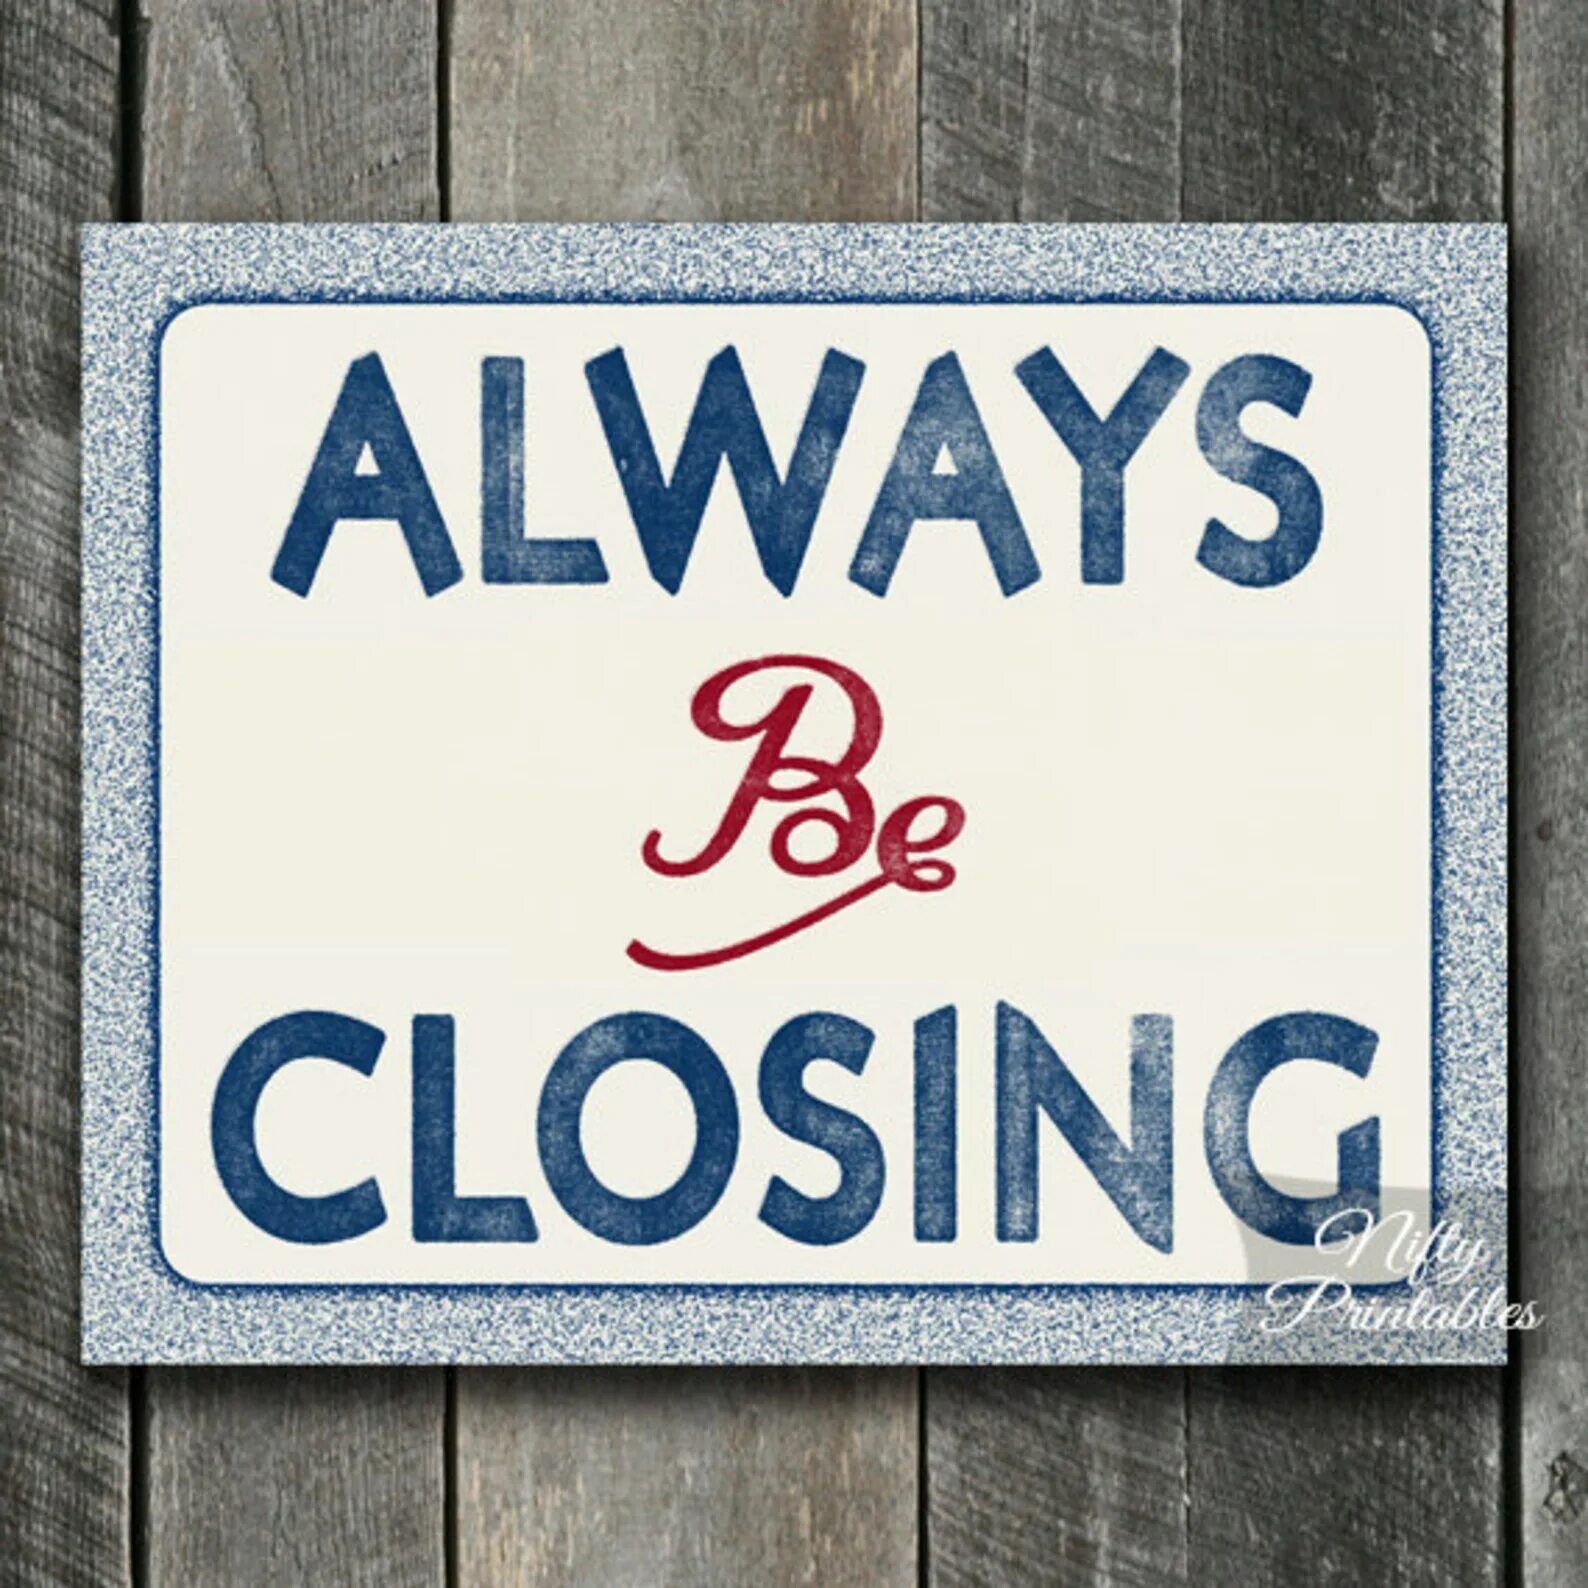 Closing. Always be closing. Always closed. Always be closing в продажах.